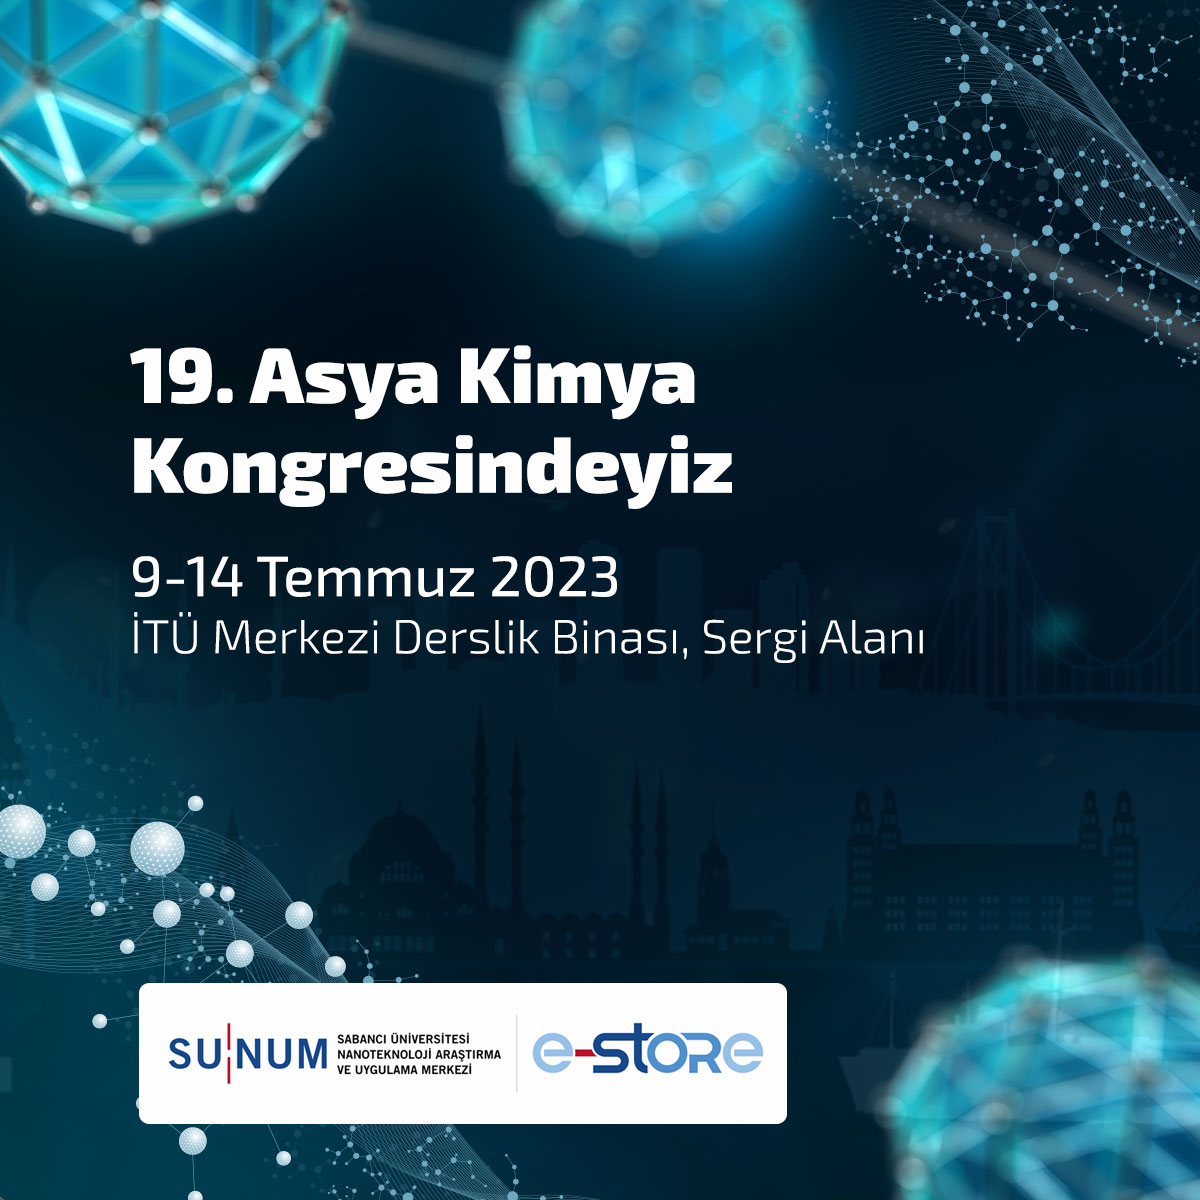 SUNUM, 9-14 Temmuz'da 19. Asya Kimya Kongresi'nde